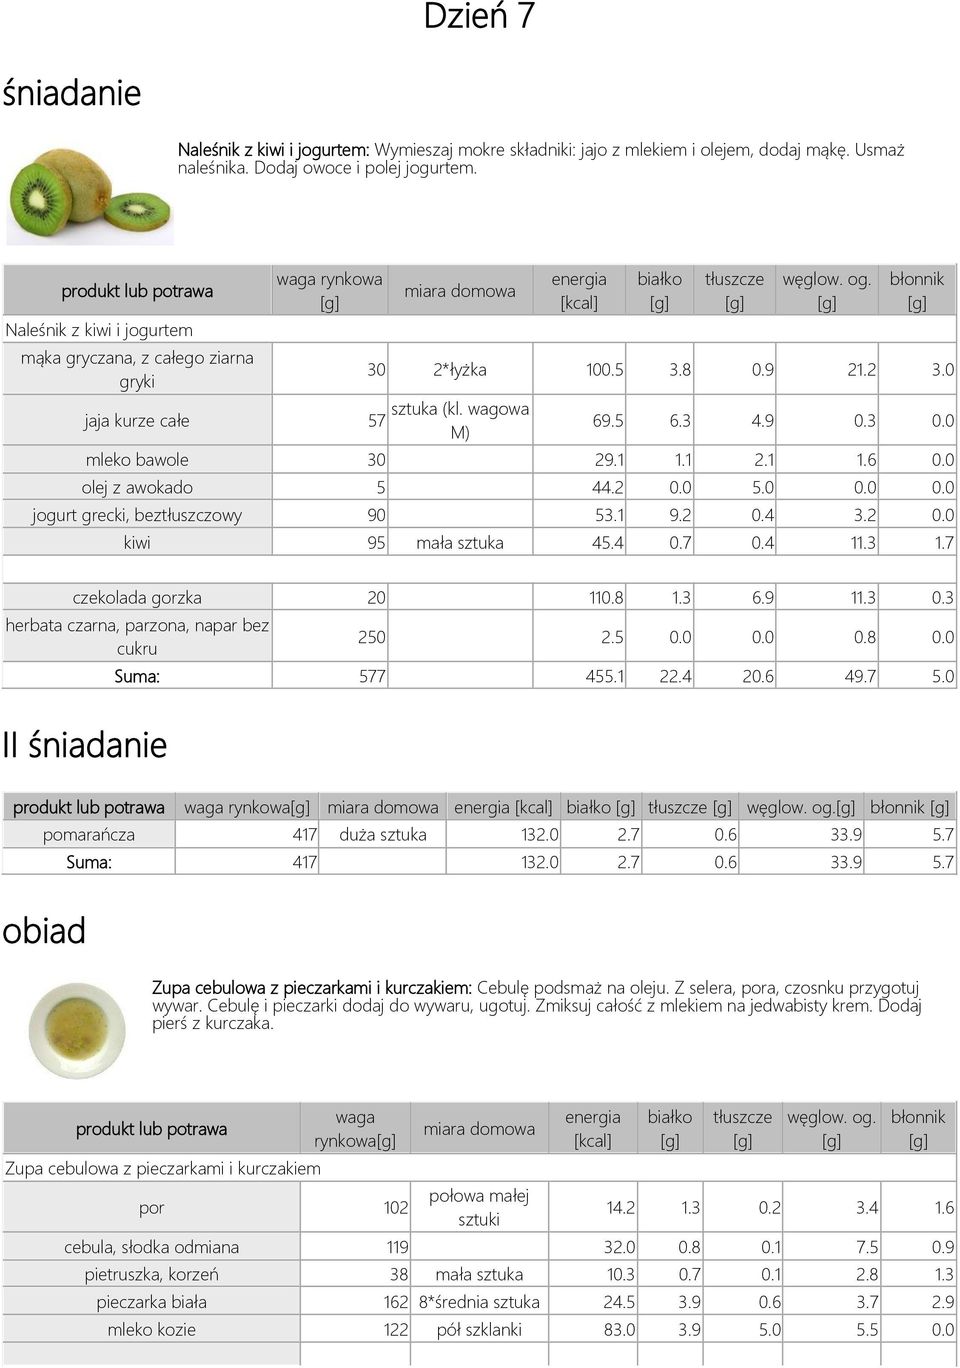 0 olej z awokado 5 44.2 0.0 5.0 0.0 0.0 jogurt grecki, beztłuszczowy 90 53.1 9.2 0.4 3.2 0.0 kiwi 95 mała sztuka 45.4 0.7 0.4 11.3 1.7 czekolada gorzka 20 110.8 1.3 6.9 11.3 0.